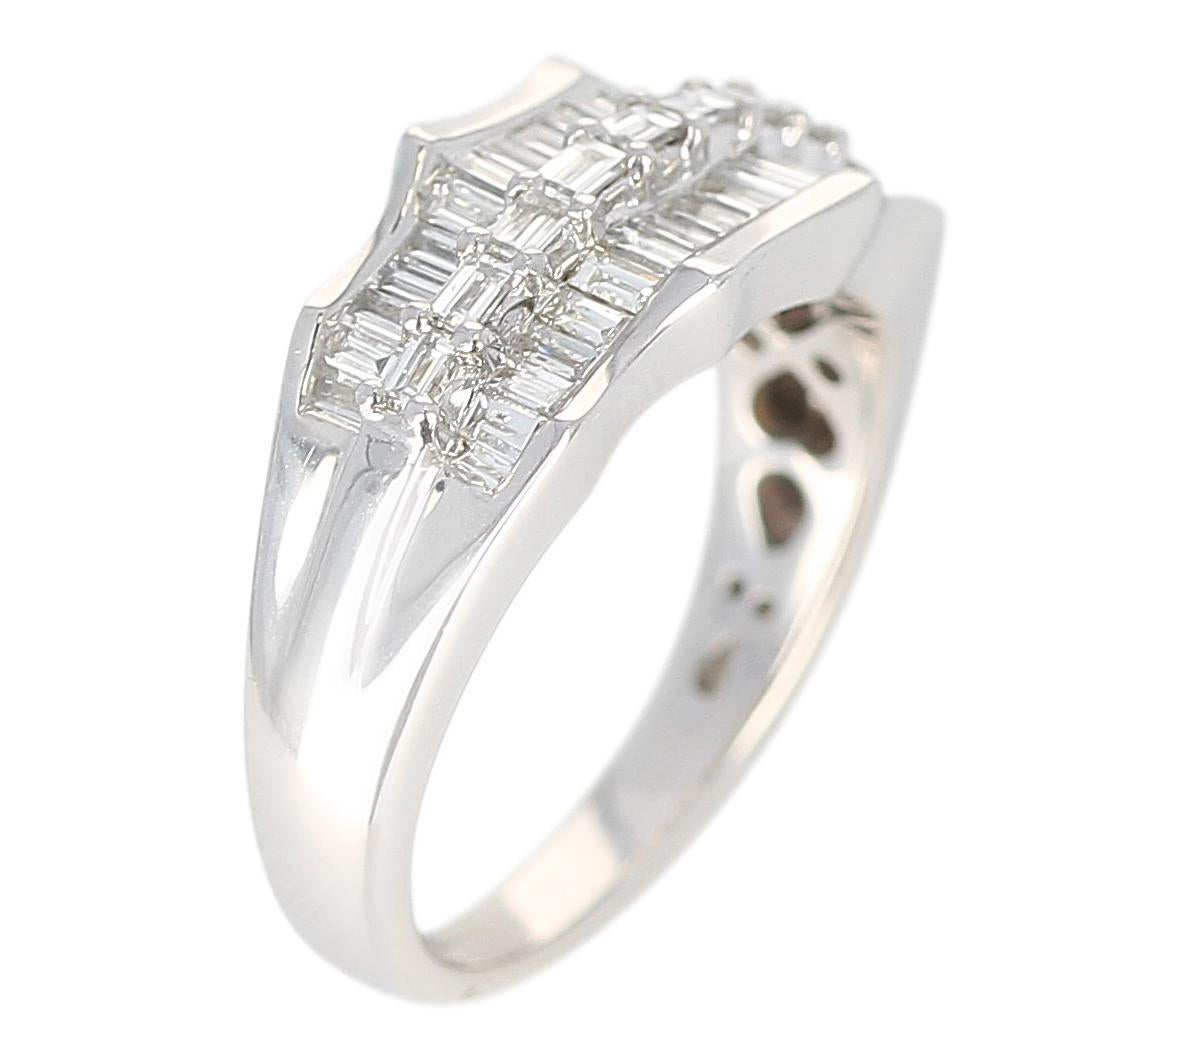 Baguette-Diamant-Brautring aus Platin in Wellenform, mit Diamanten von 1 Karat. Gesamtgewicht: 7,51 Gramm, Ringgröße US 6.50. 